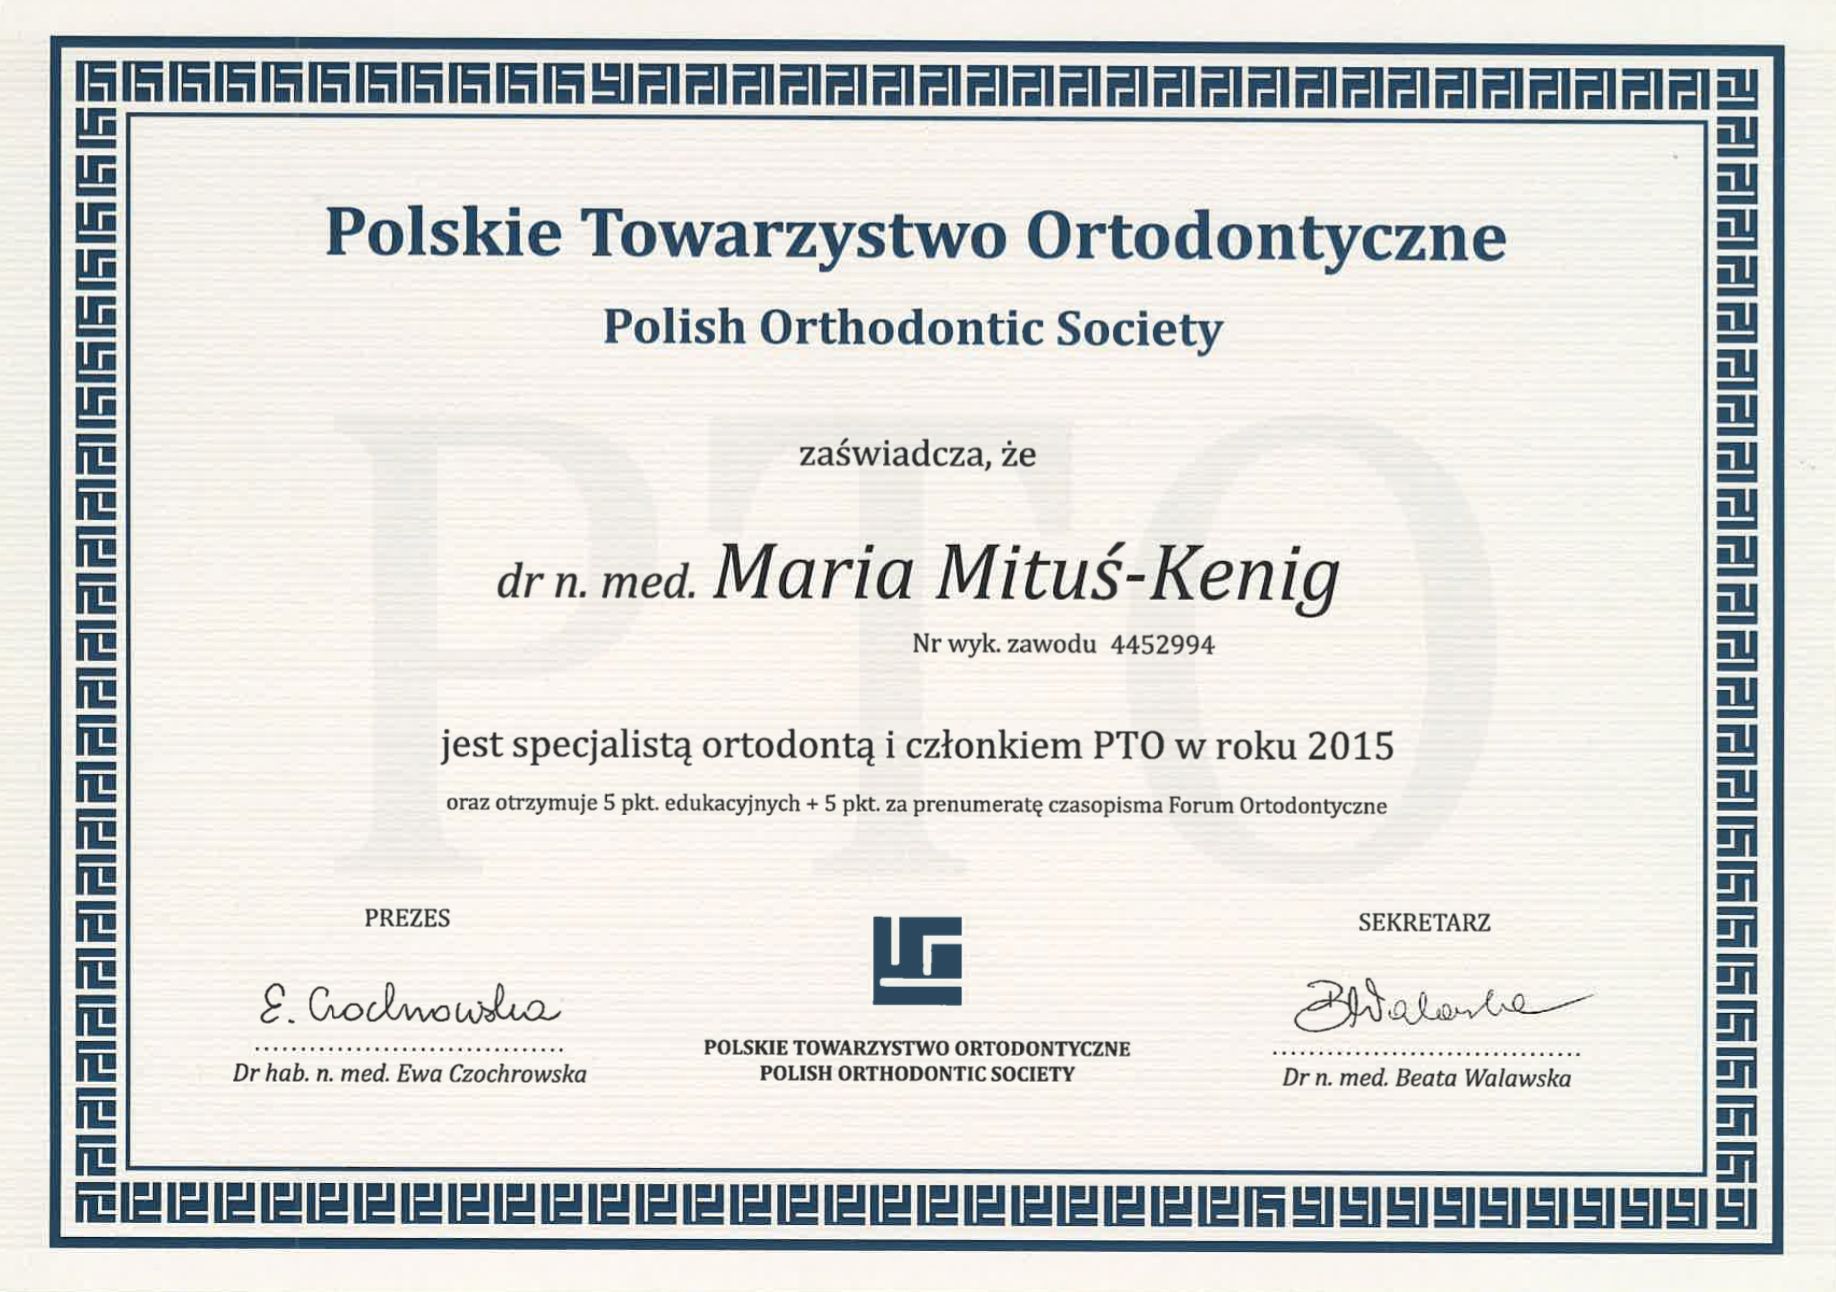 certyfikat ukończenia kursu medycznego o tematyce ortodontycznej